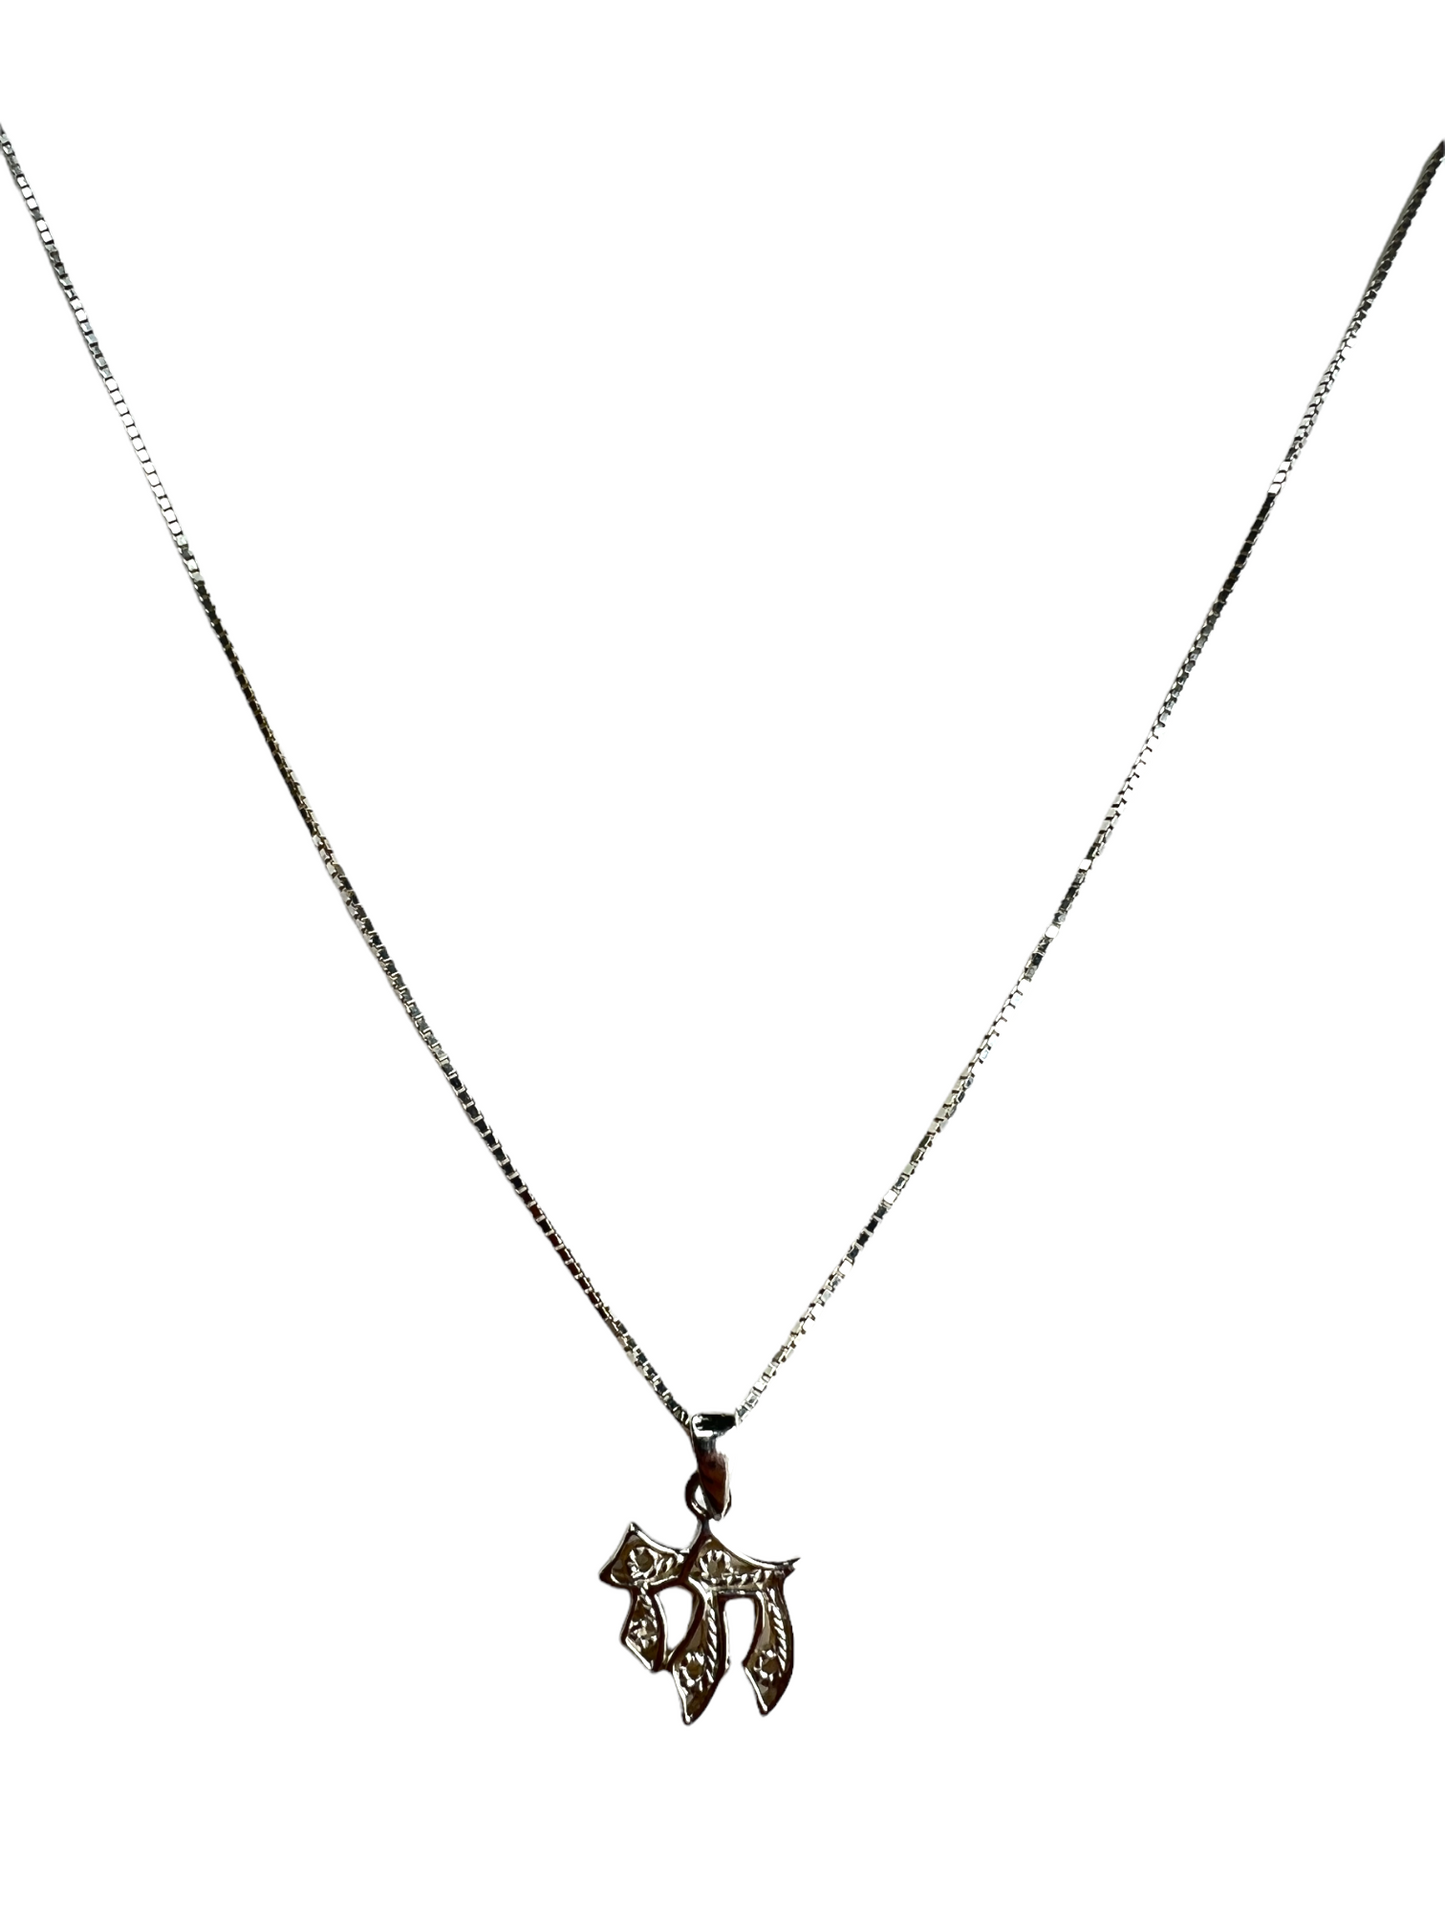 Chai Silver Necklace